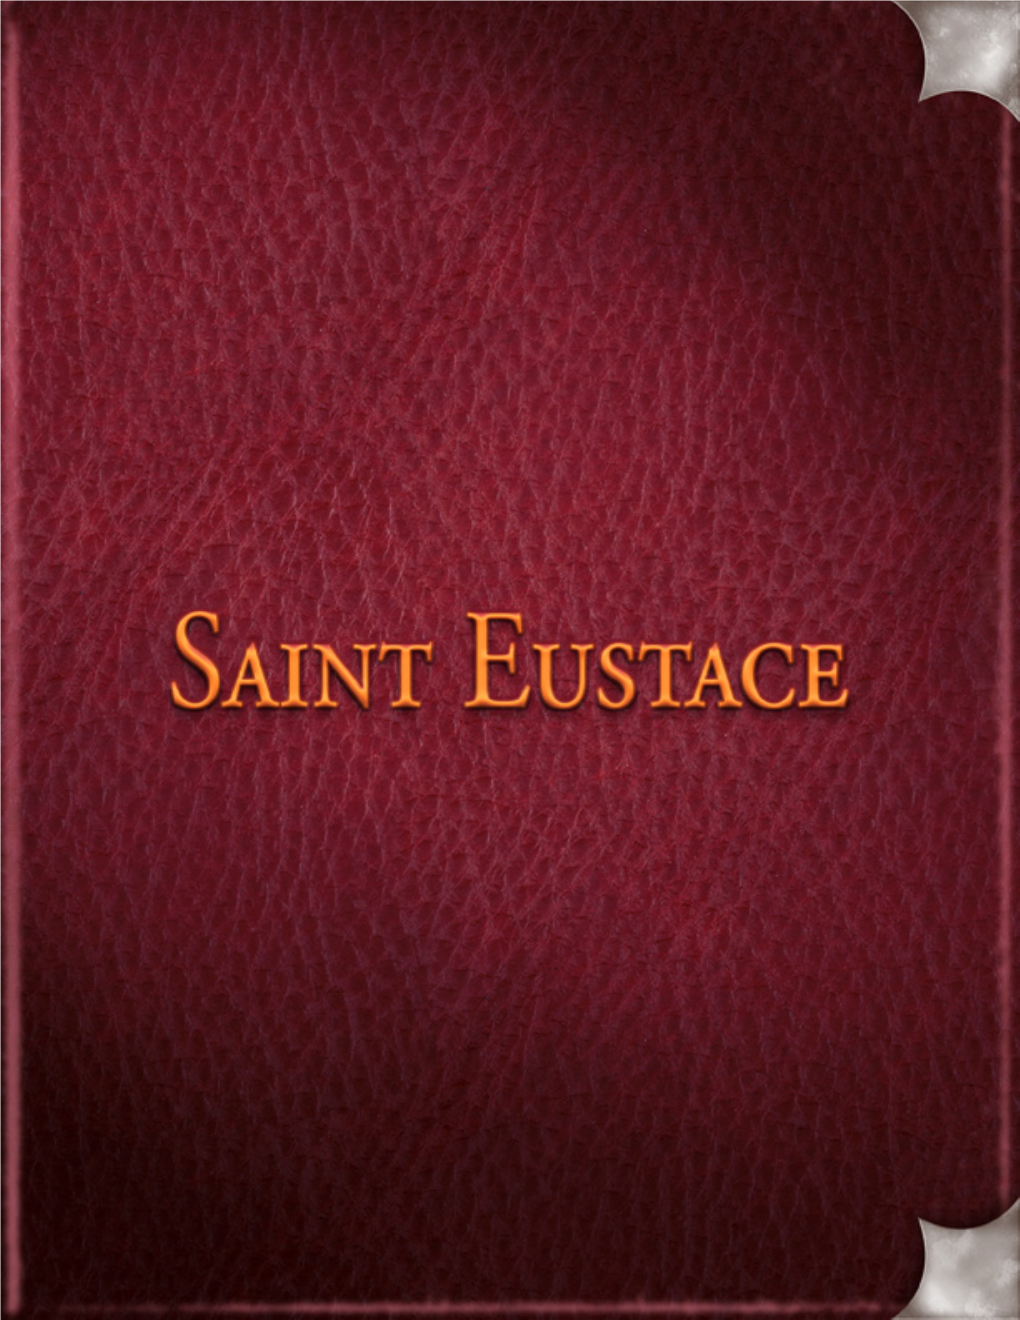 Saint Eustace by Lady Gwendolyn